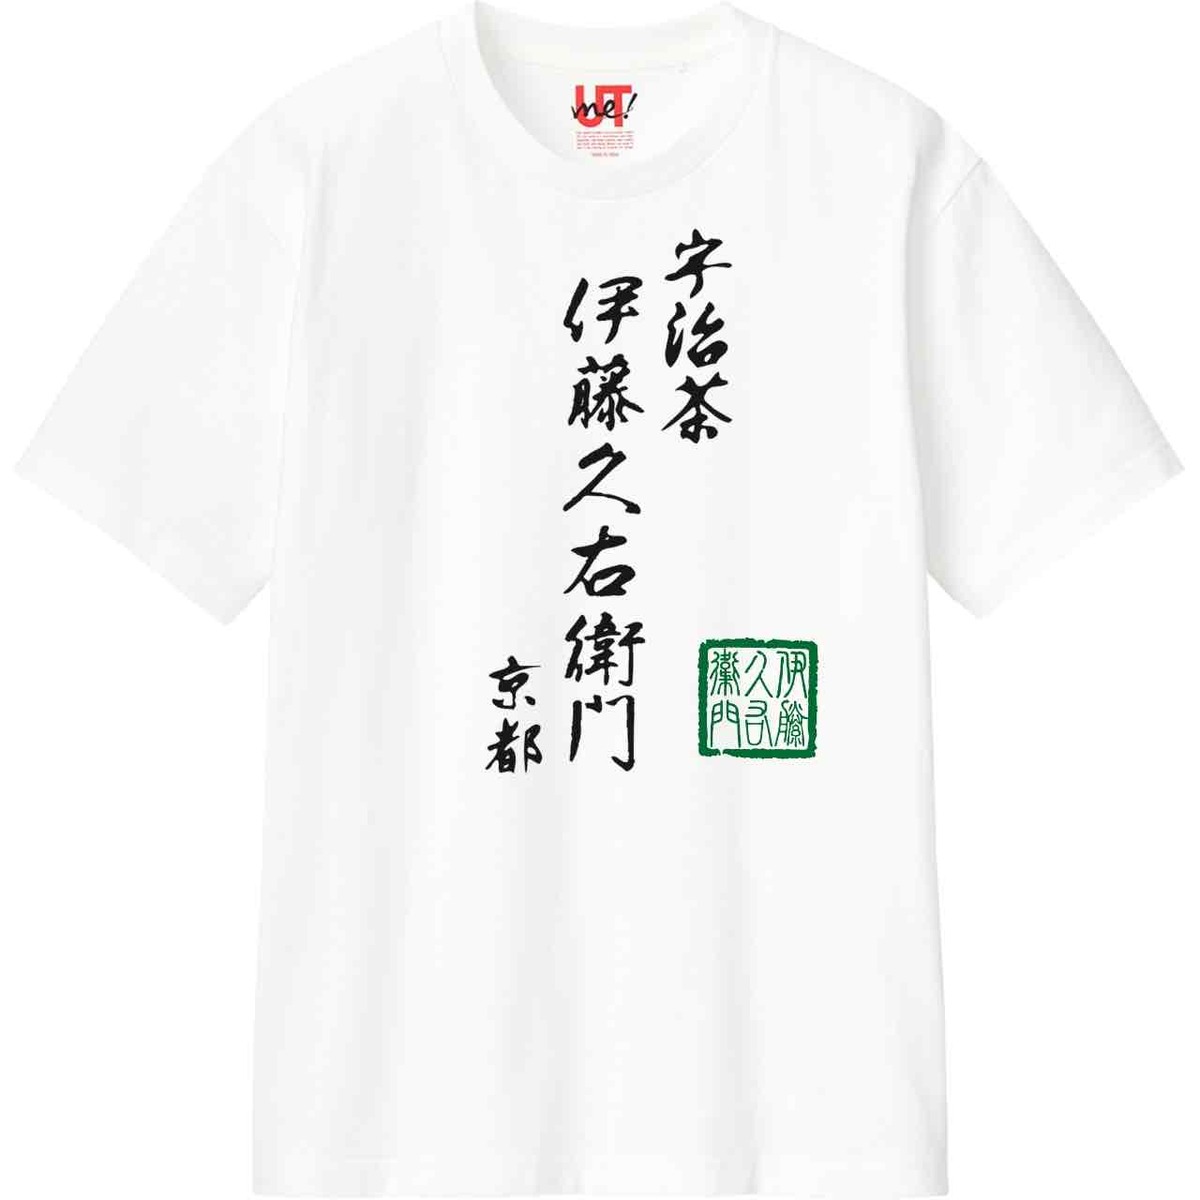 【ユニクロ × 伊藤久右衛門】コラボTシャツを京都ヨドバシにて限定販売